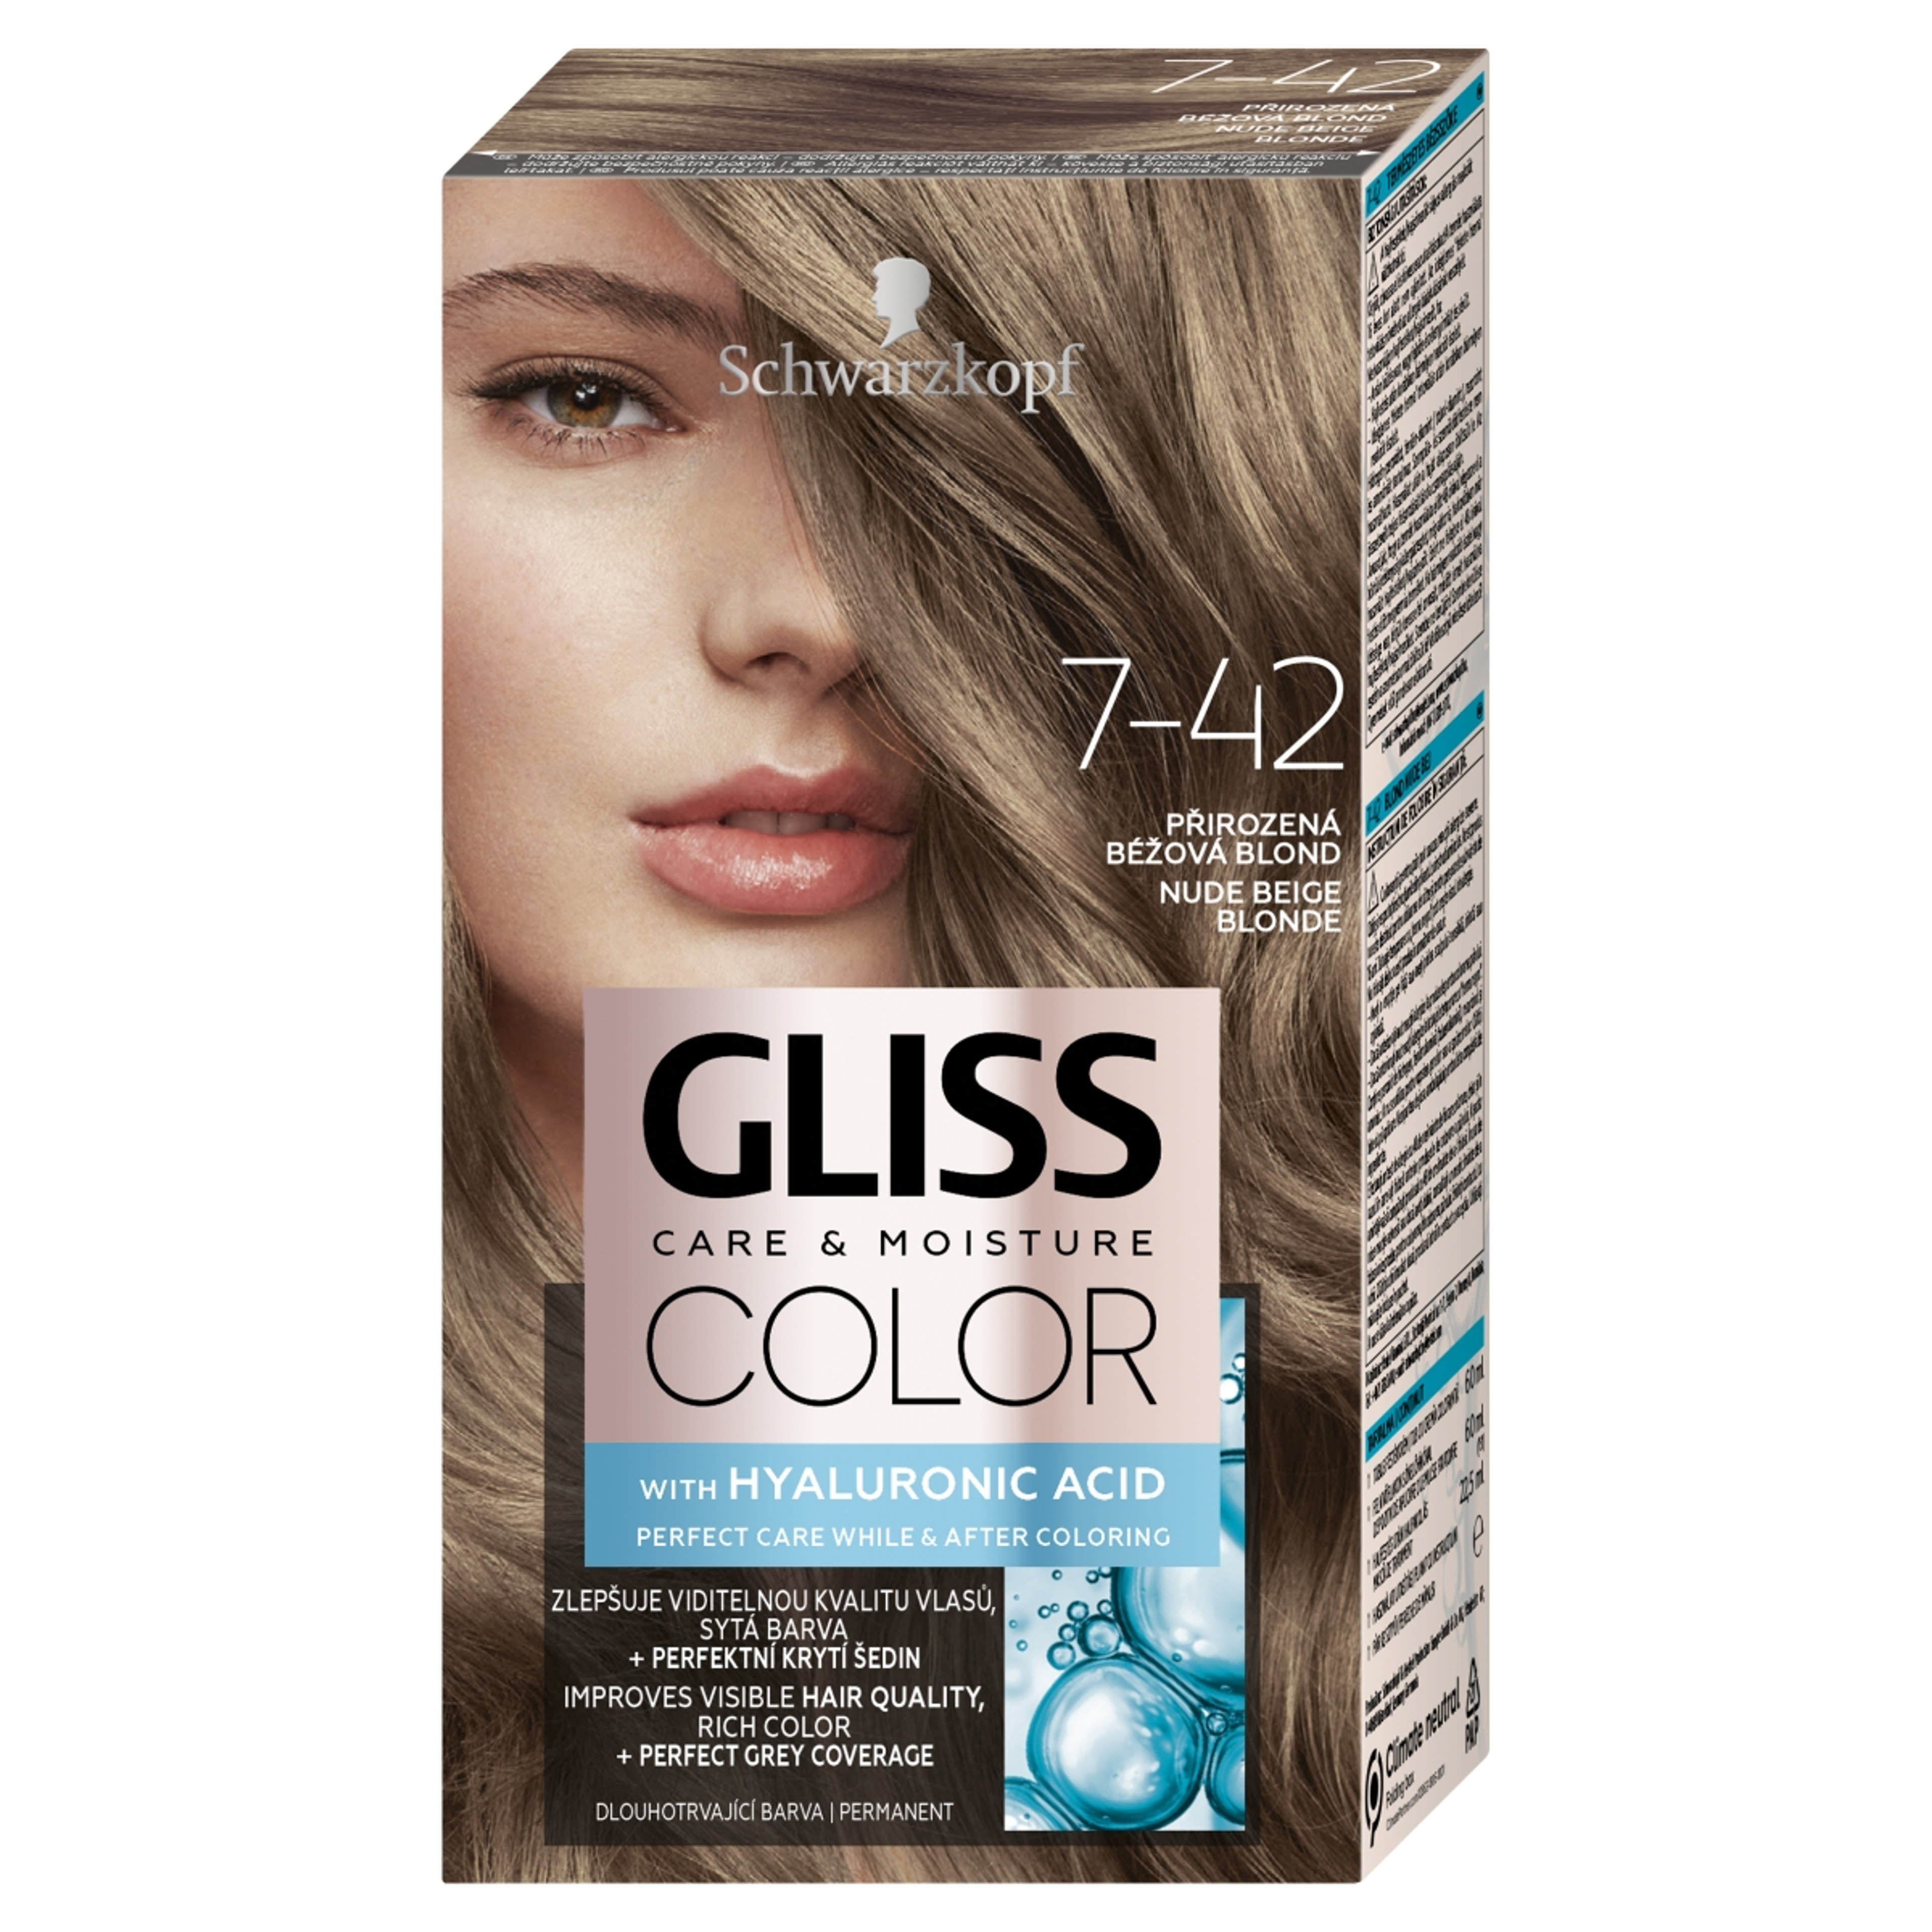 Schwarzkopf Gliss Color tartós hajfesték 7-42 természetes bézsszőke - 1 db